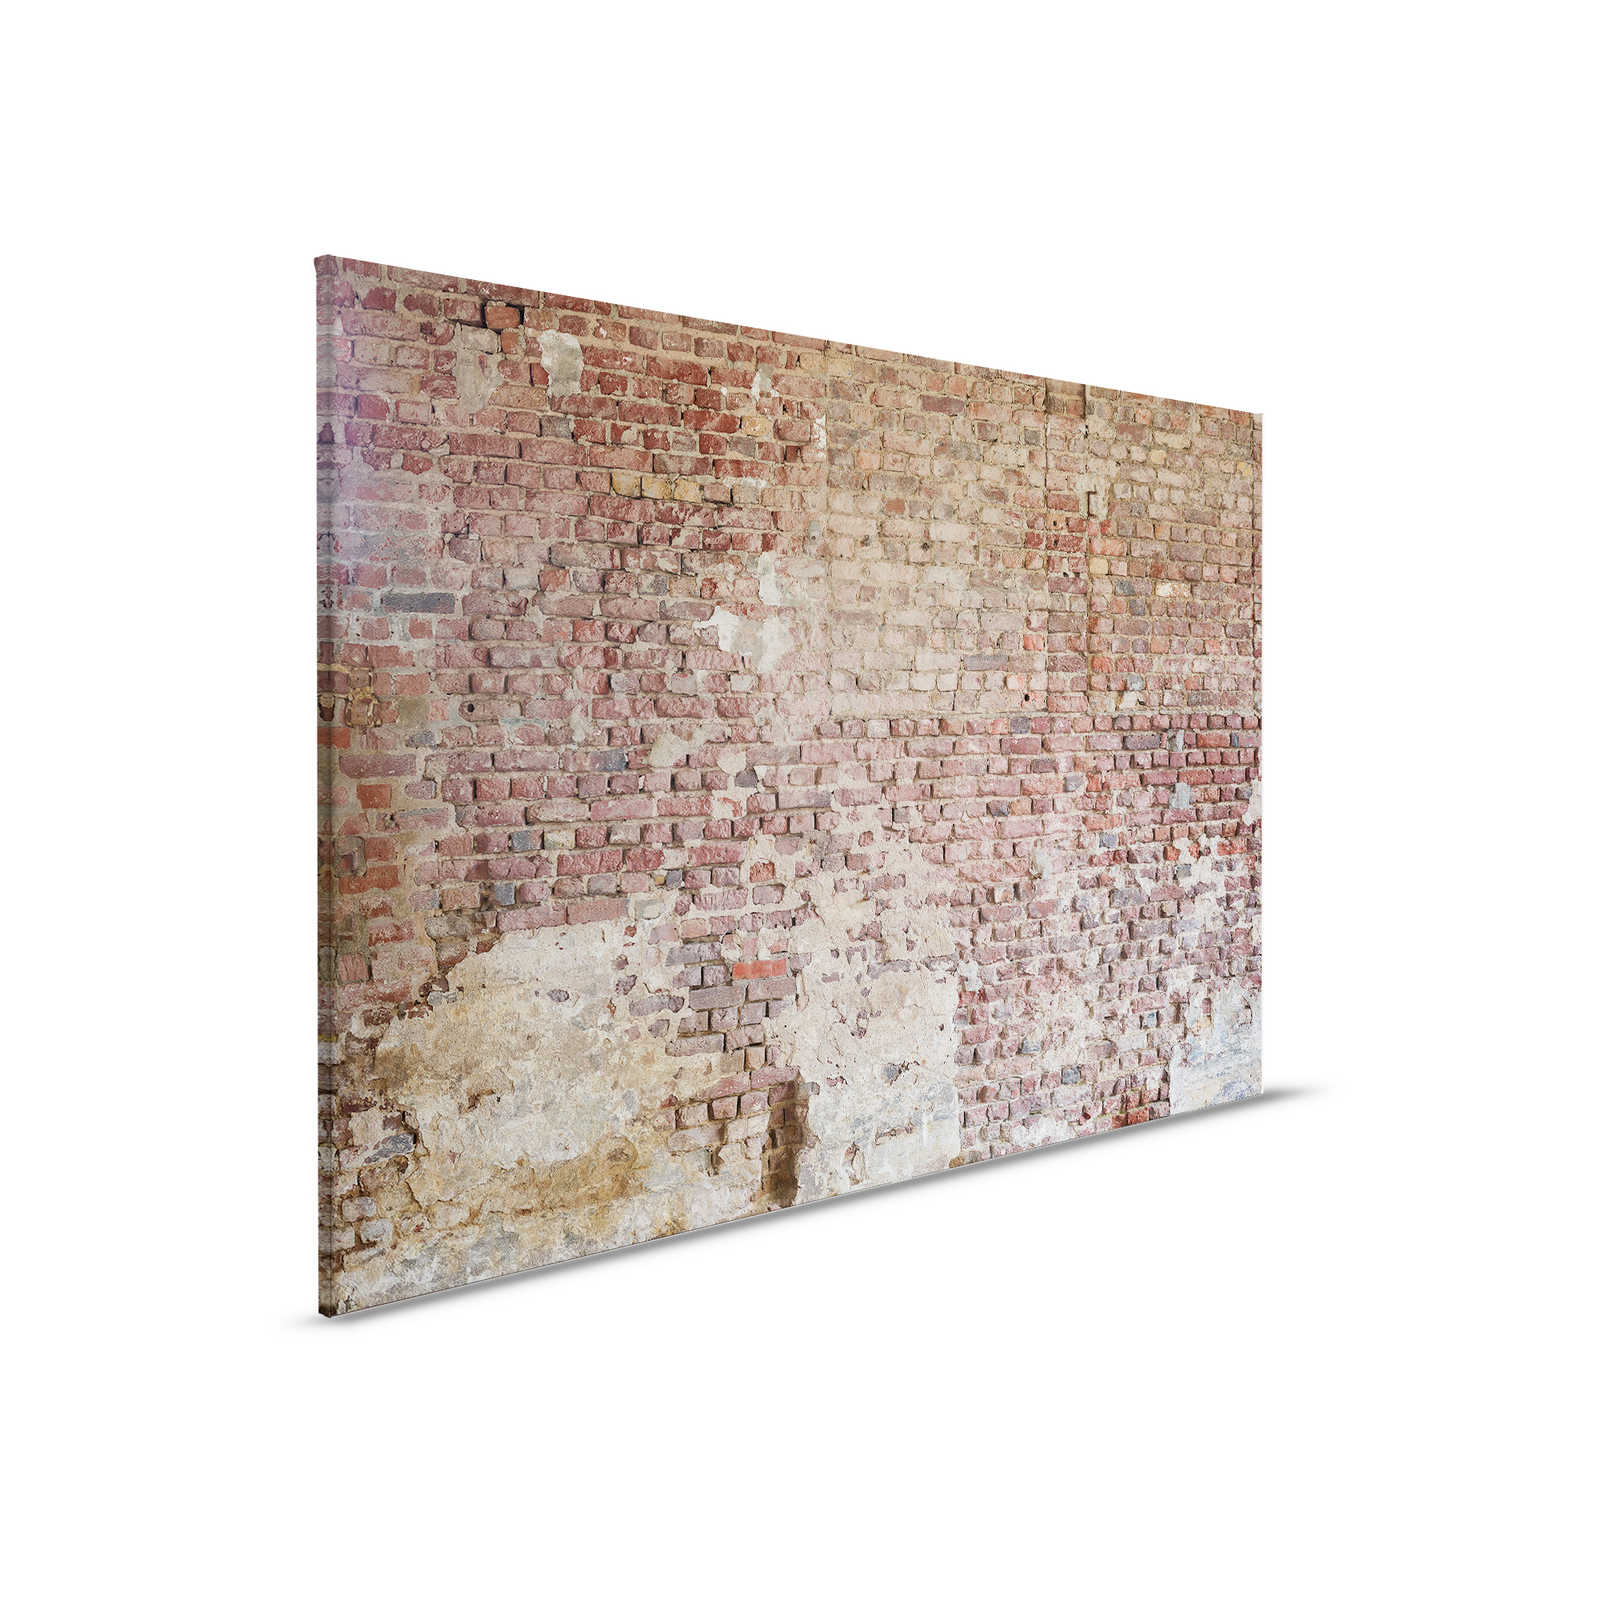         Leinwandbild mit Ziegelsteinwand im Vintagestil – 0,90 m x 0,60 m
    